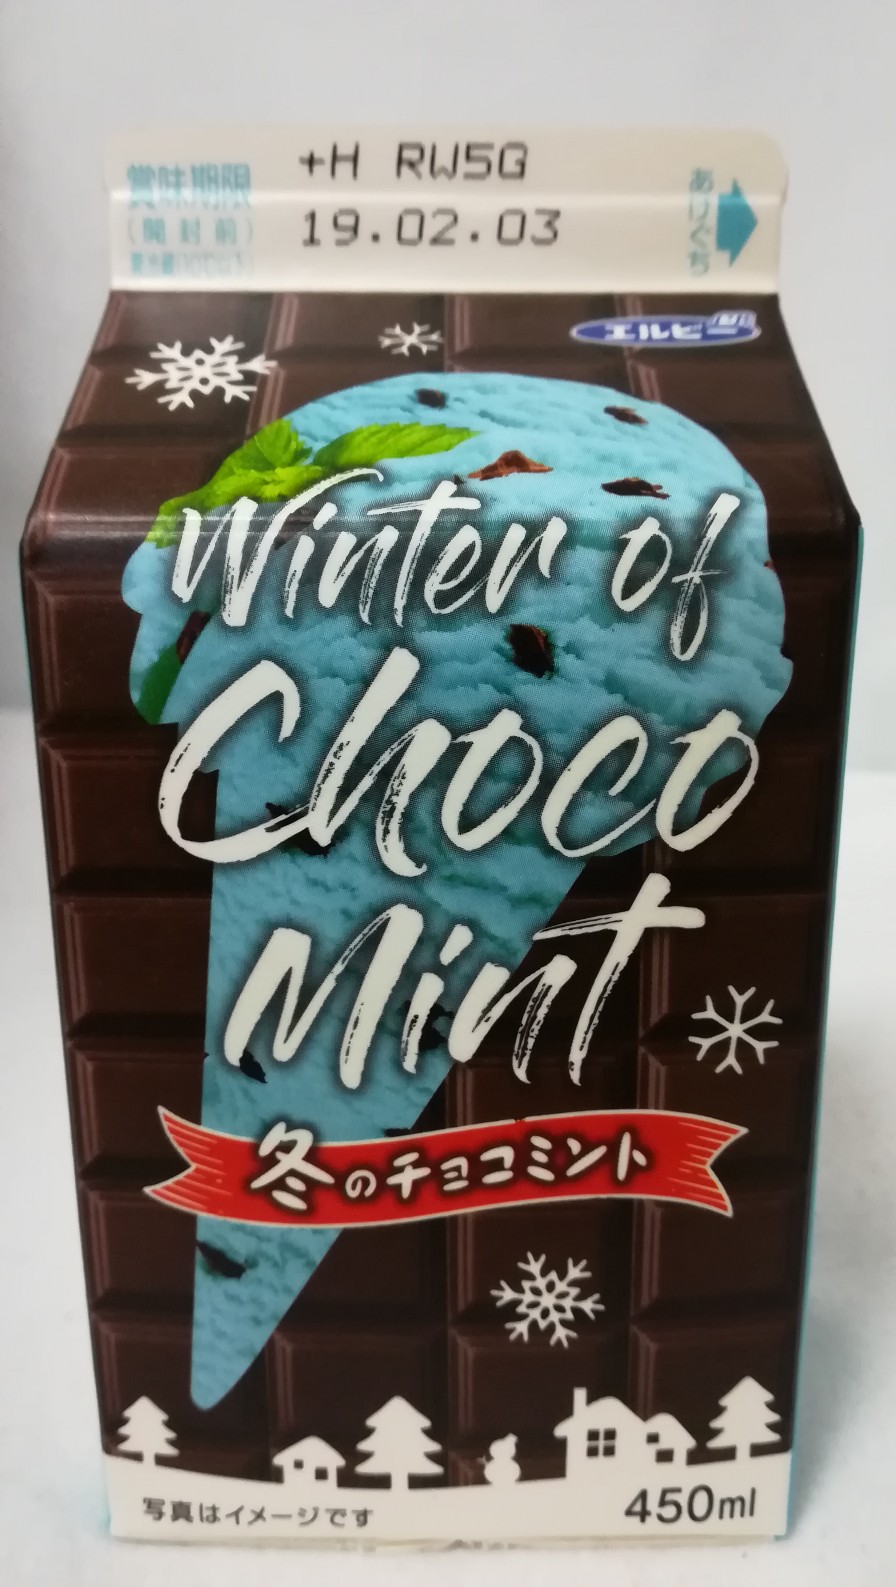 エルビー 冬のチョコミント 新発売の飲み物をレビューするブログ